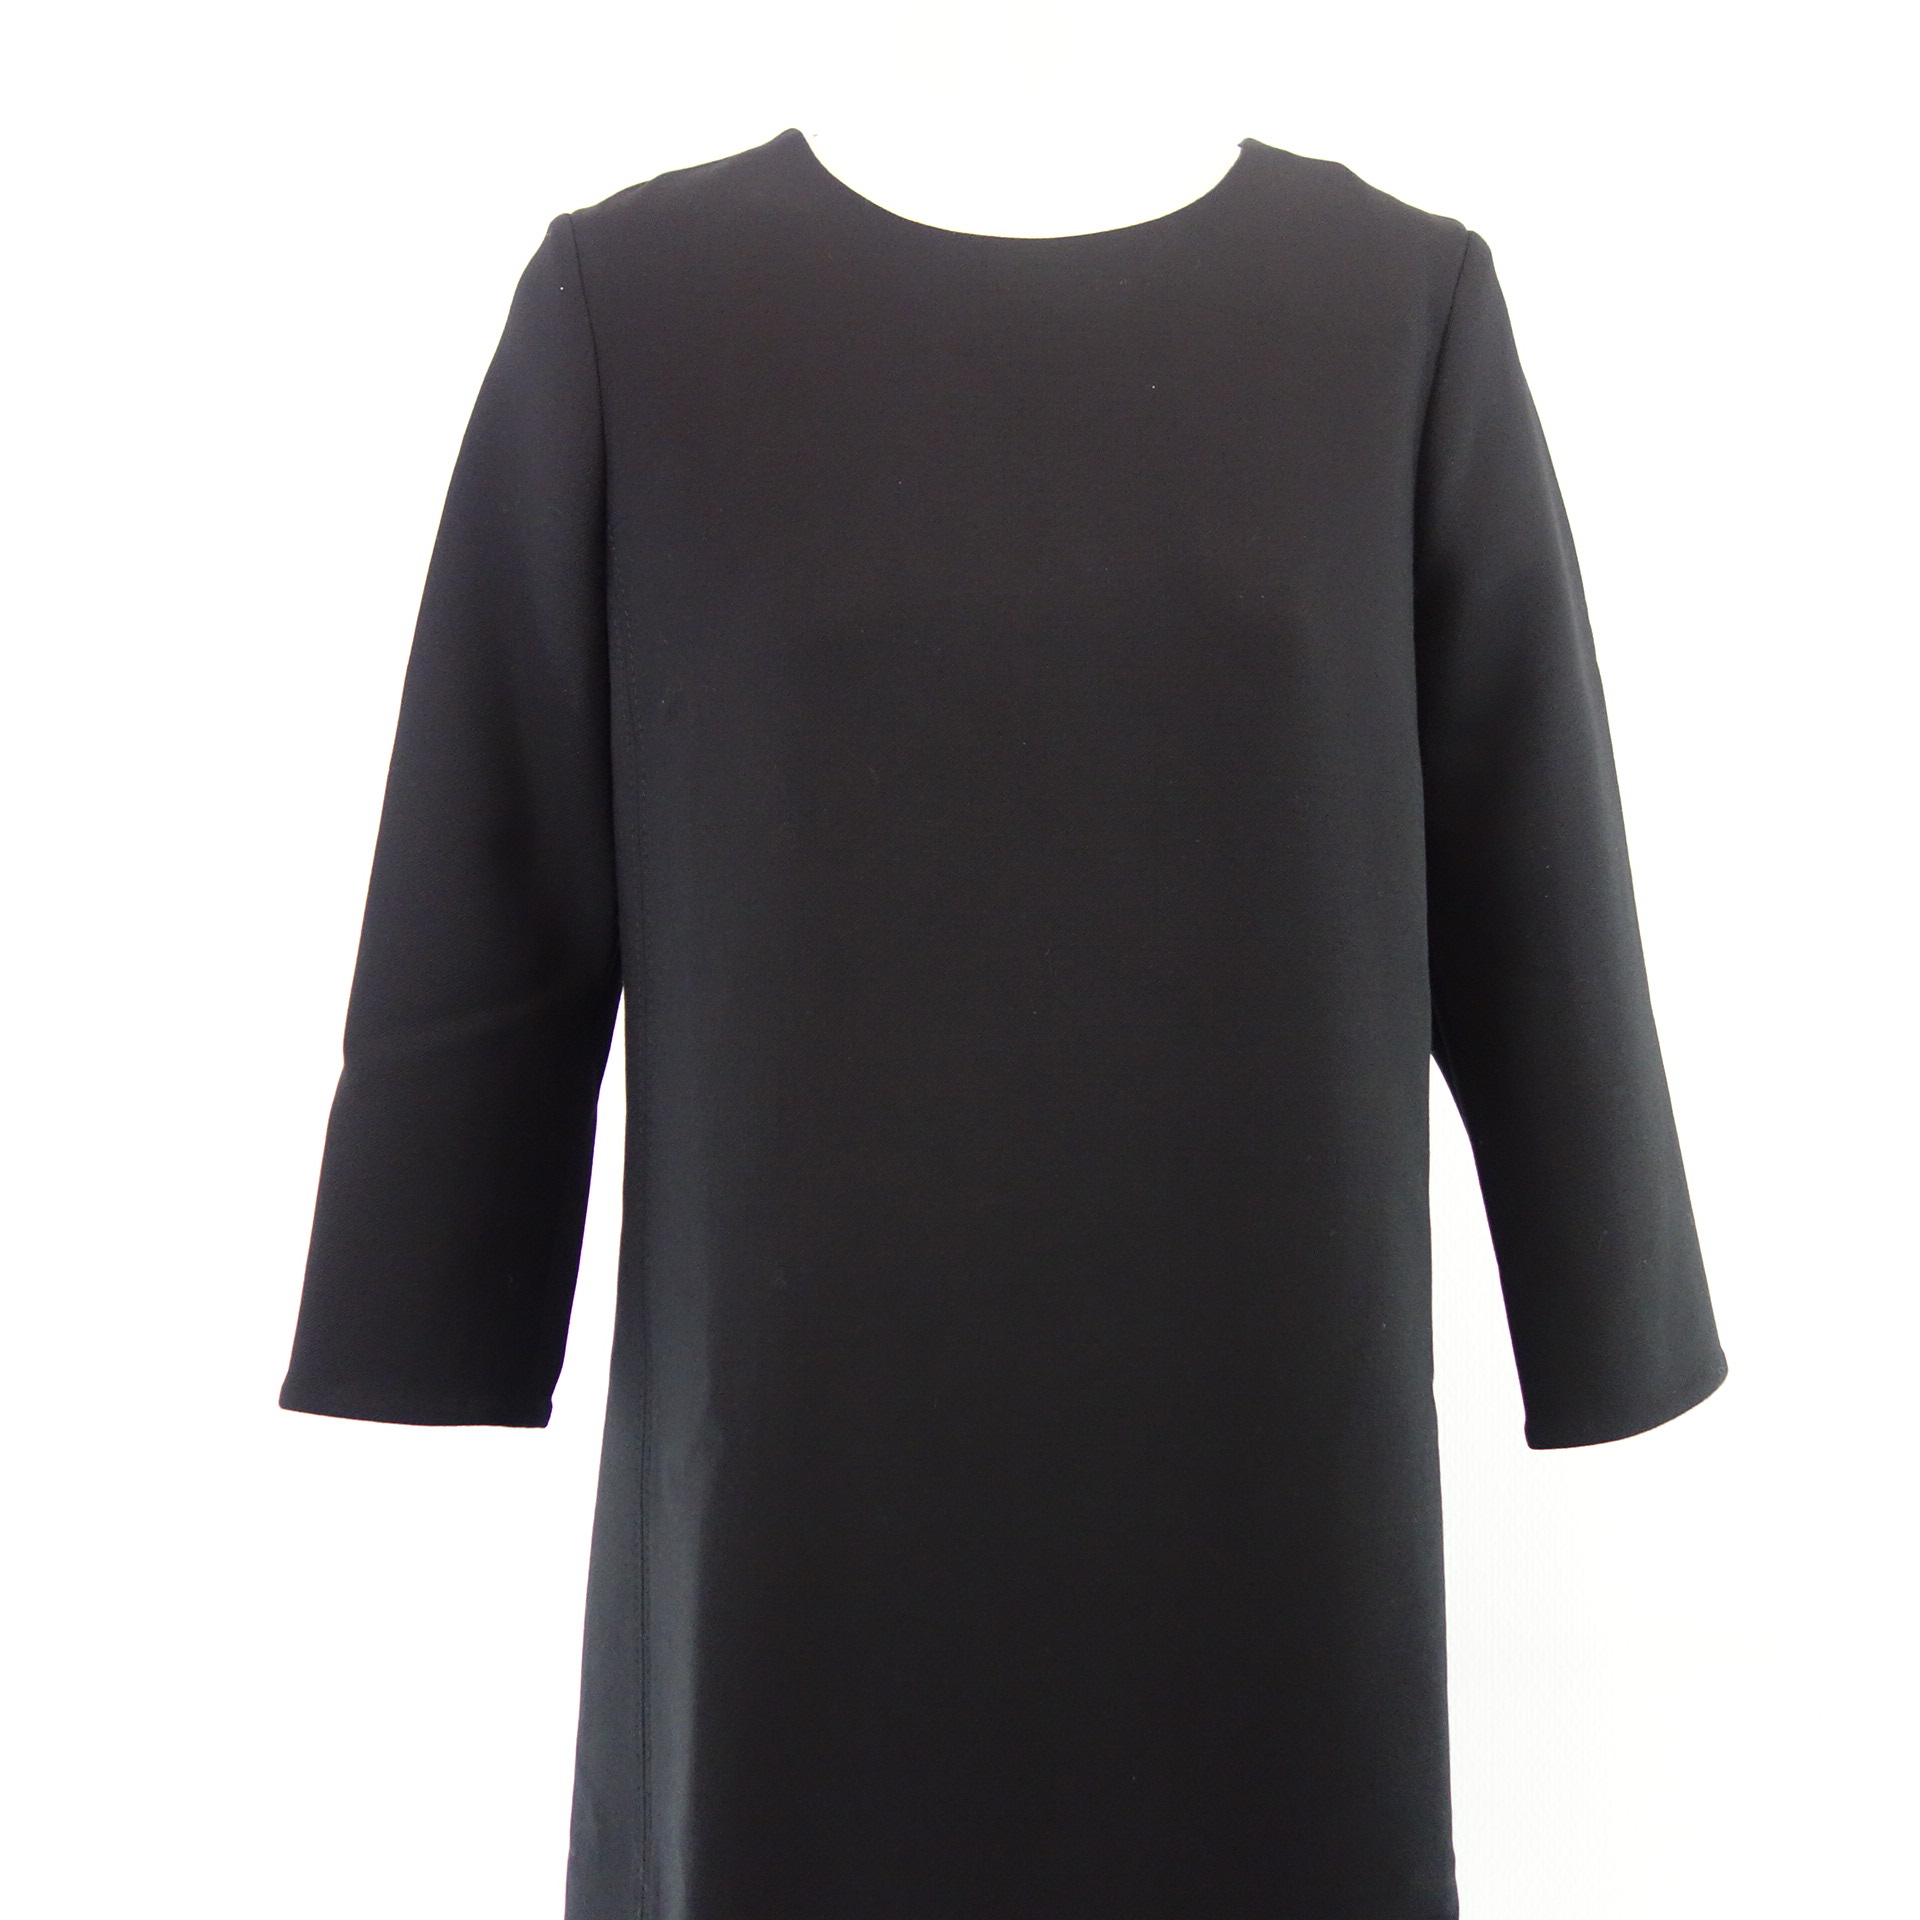 DOROTHEE SCHUMACHER Damen Kleid Etuikleid Abendkleid Schwarz Gr 3 ( 38 ) 